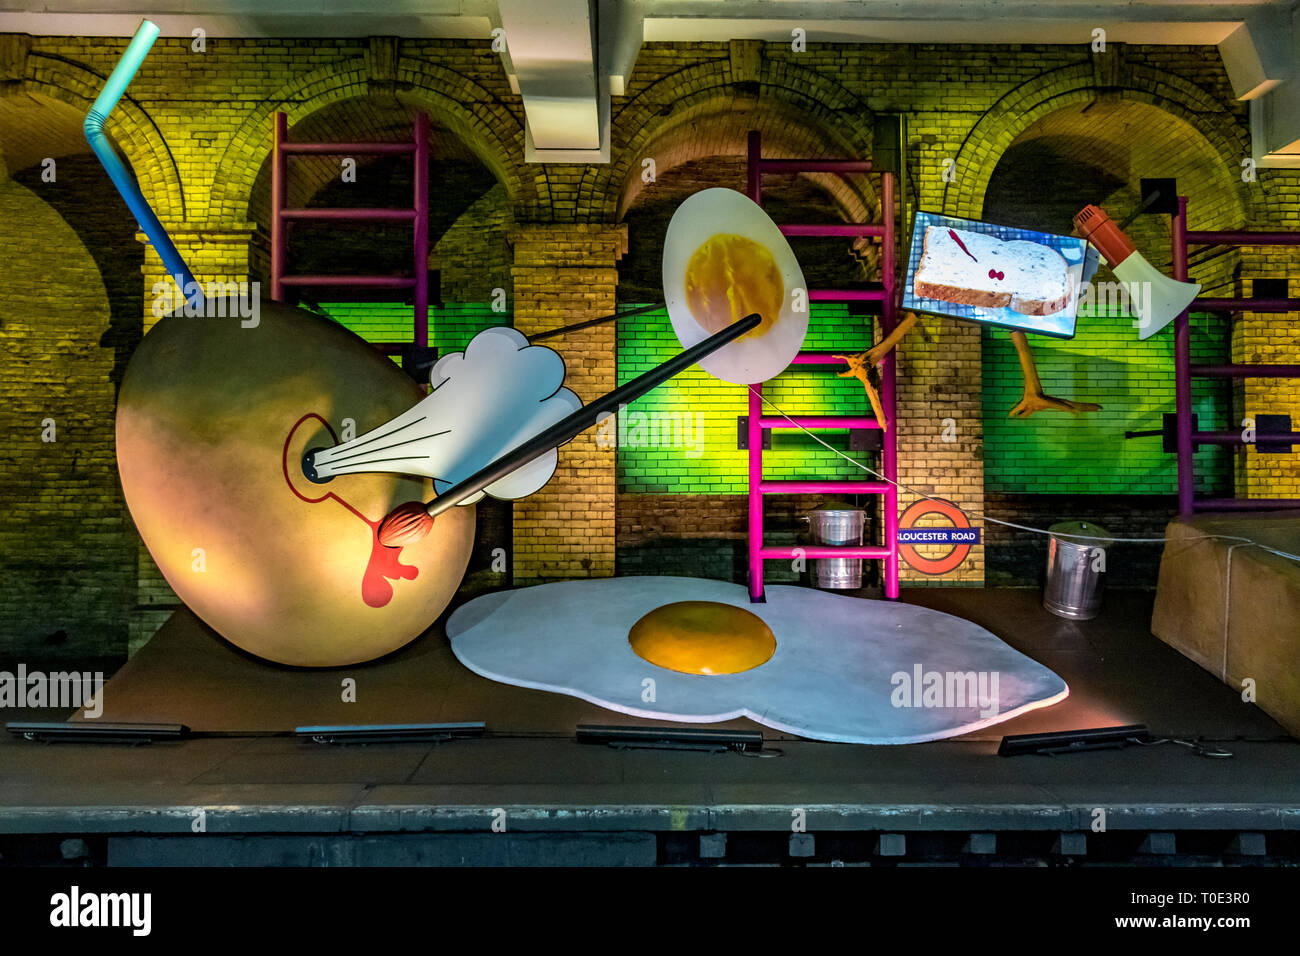 Installazione artistica di uova giganti di Heather Phillipson alla stazione della metropolitana di Gloucester Road, progetto Art of the Art on the Underground, Londra, Regno Unito Foto Stock